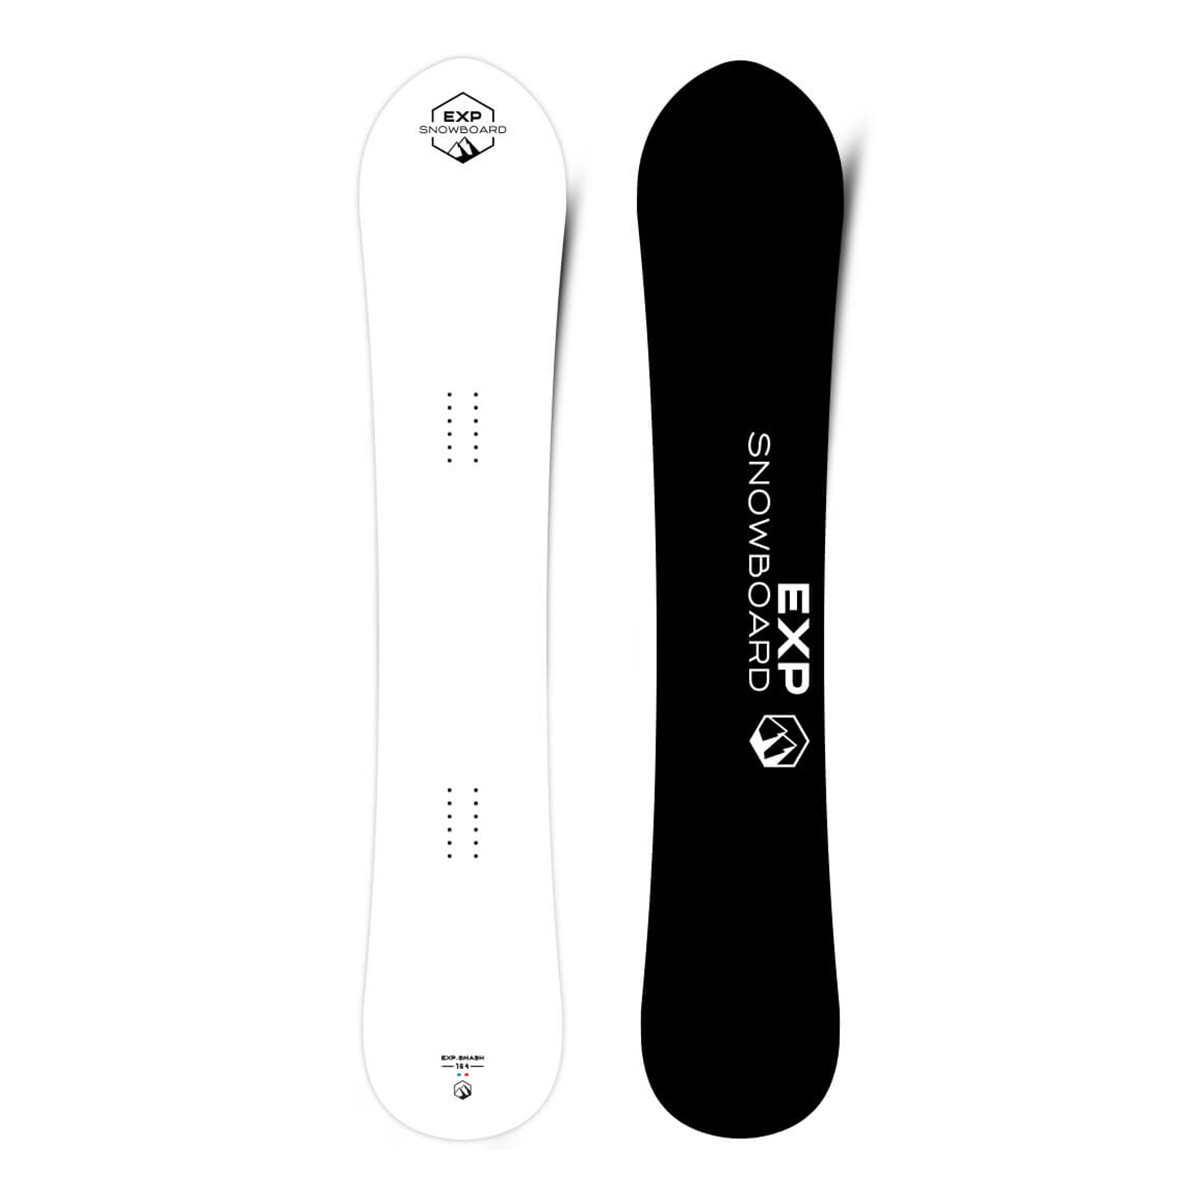  Tavola snowboard EXP Smash (Colore: bianco, Taglia: 164) 